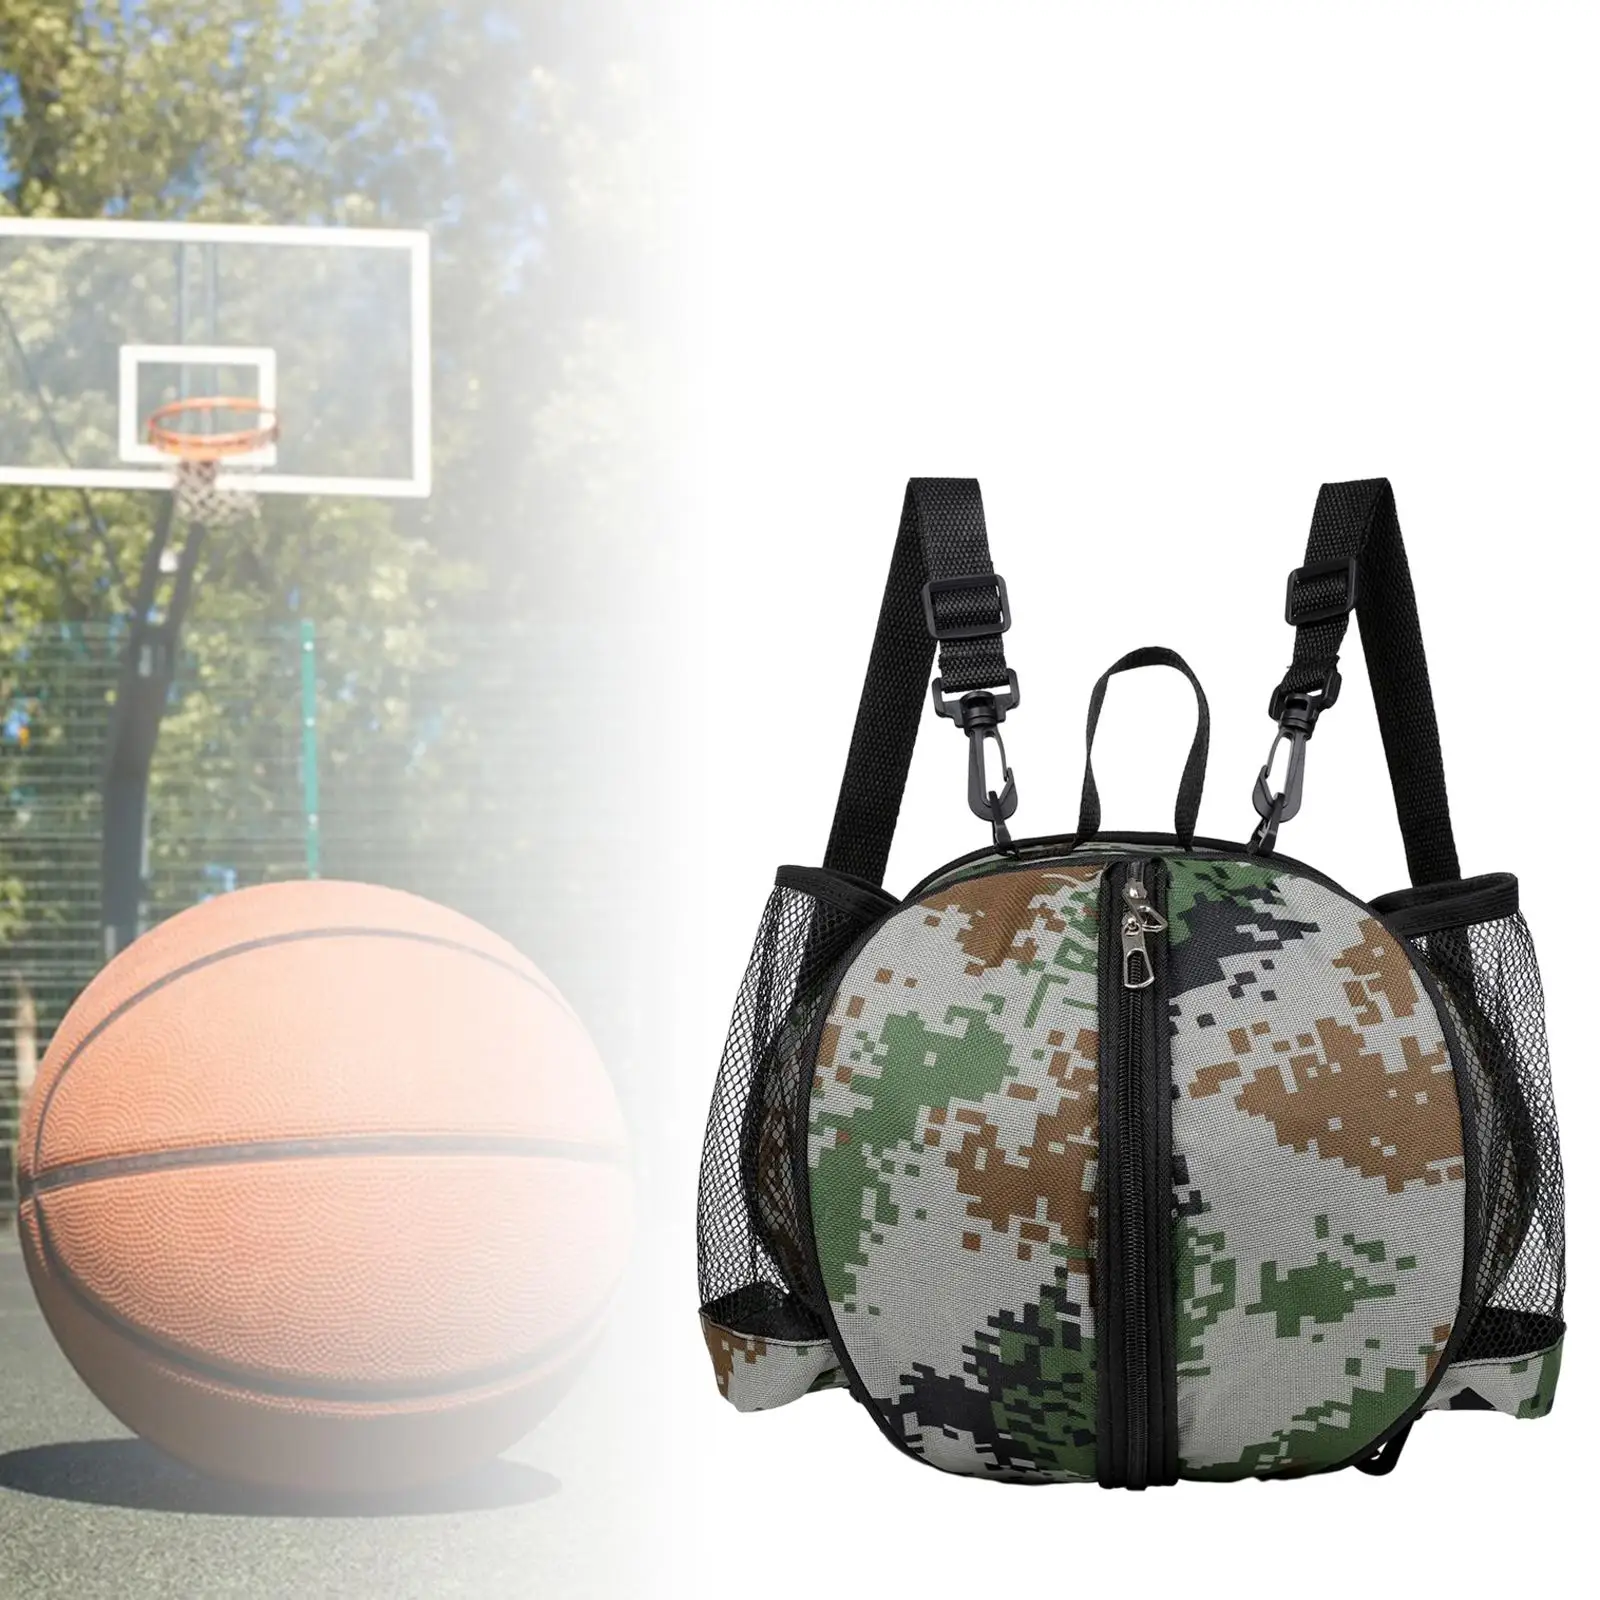 Basketball Shoulder Bag Backpack Basketball Tote Bag with 2 Side Pockets